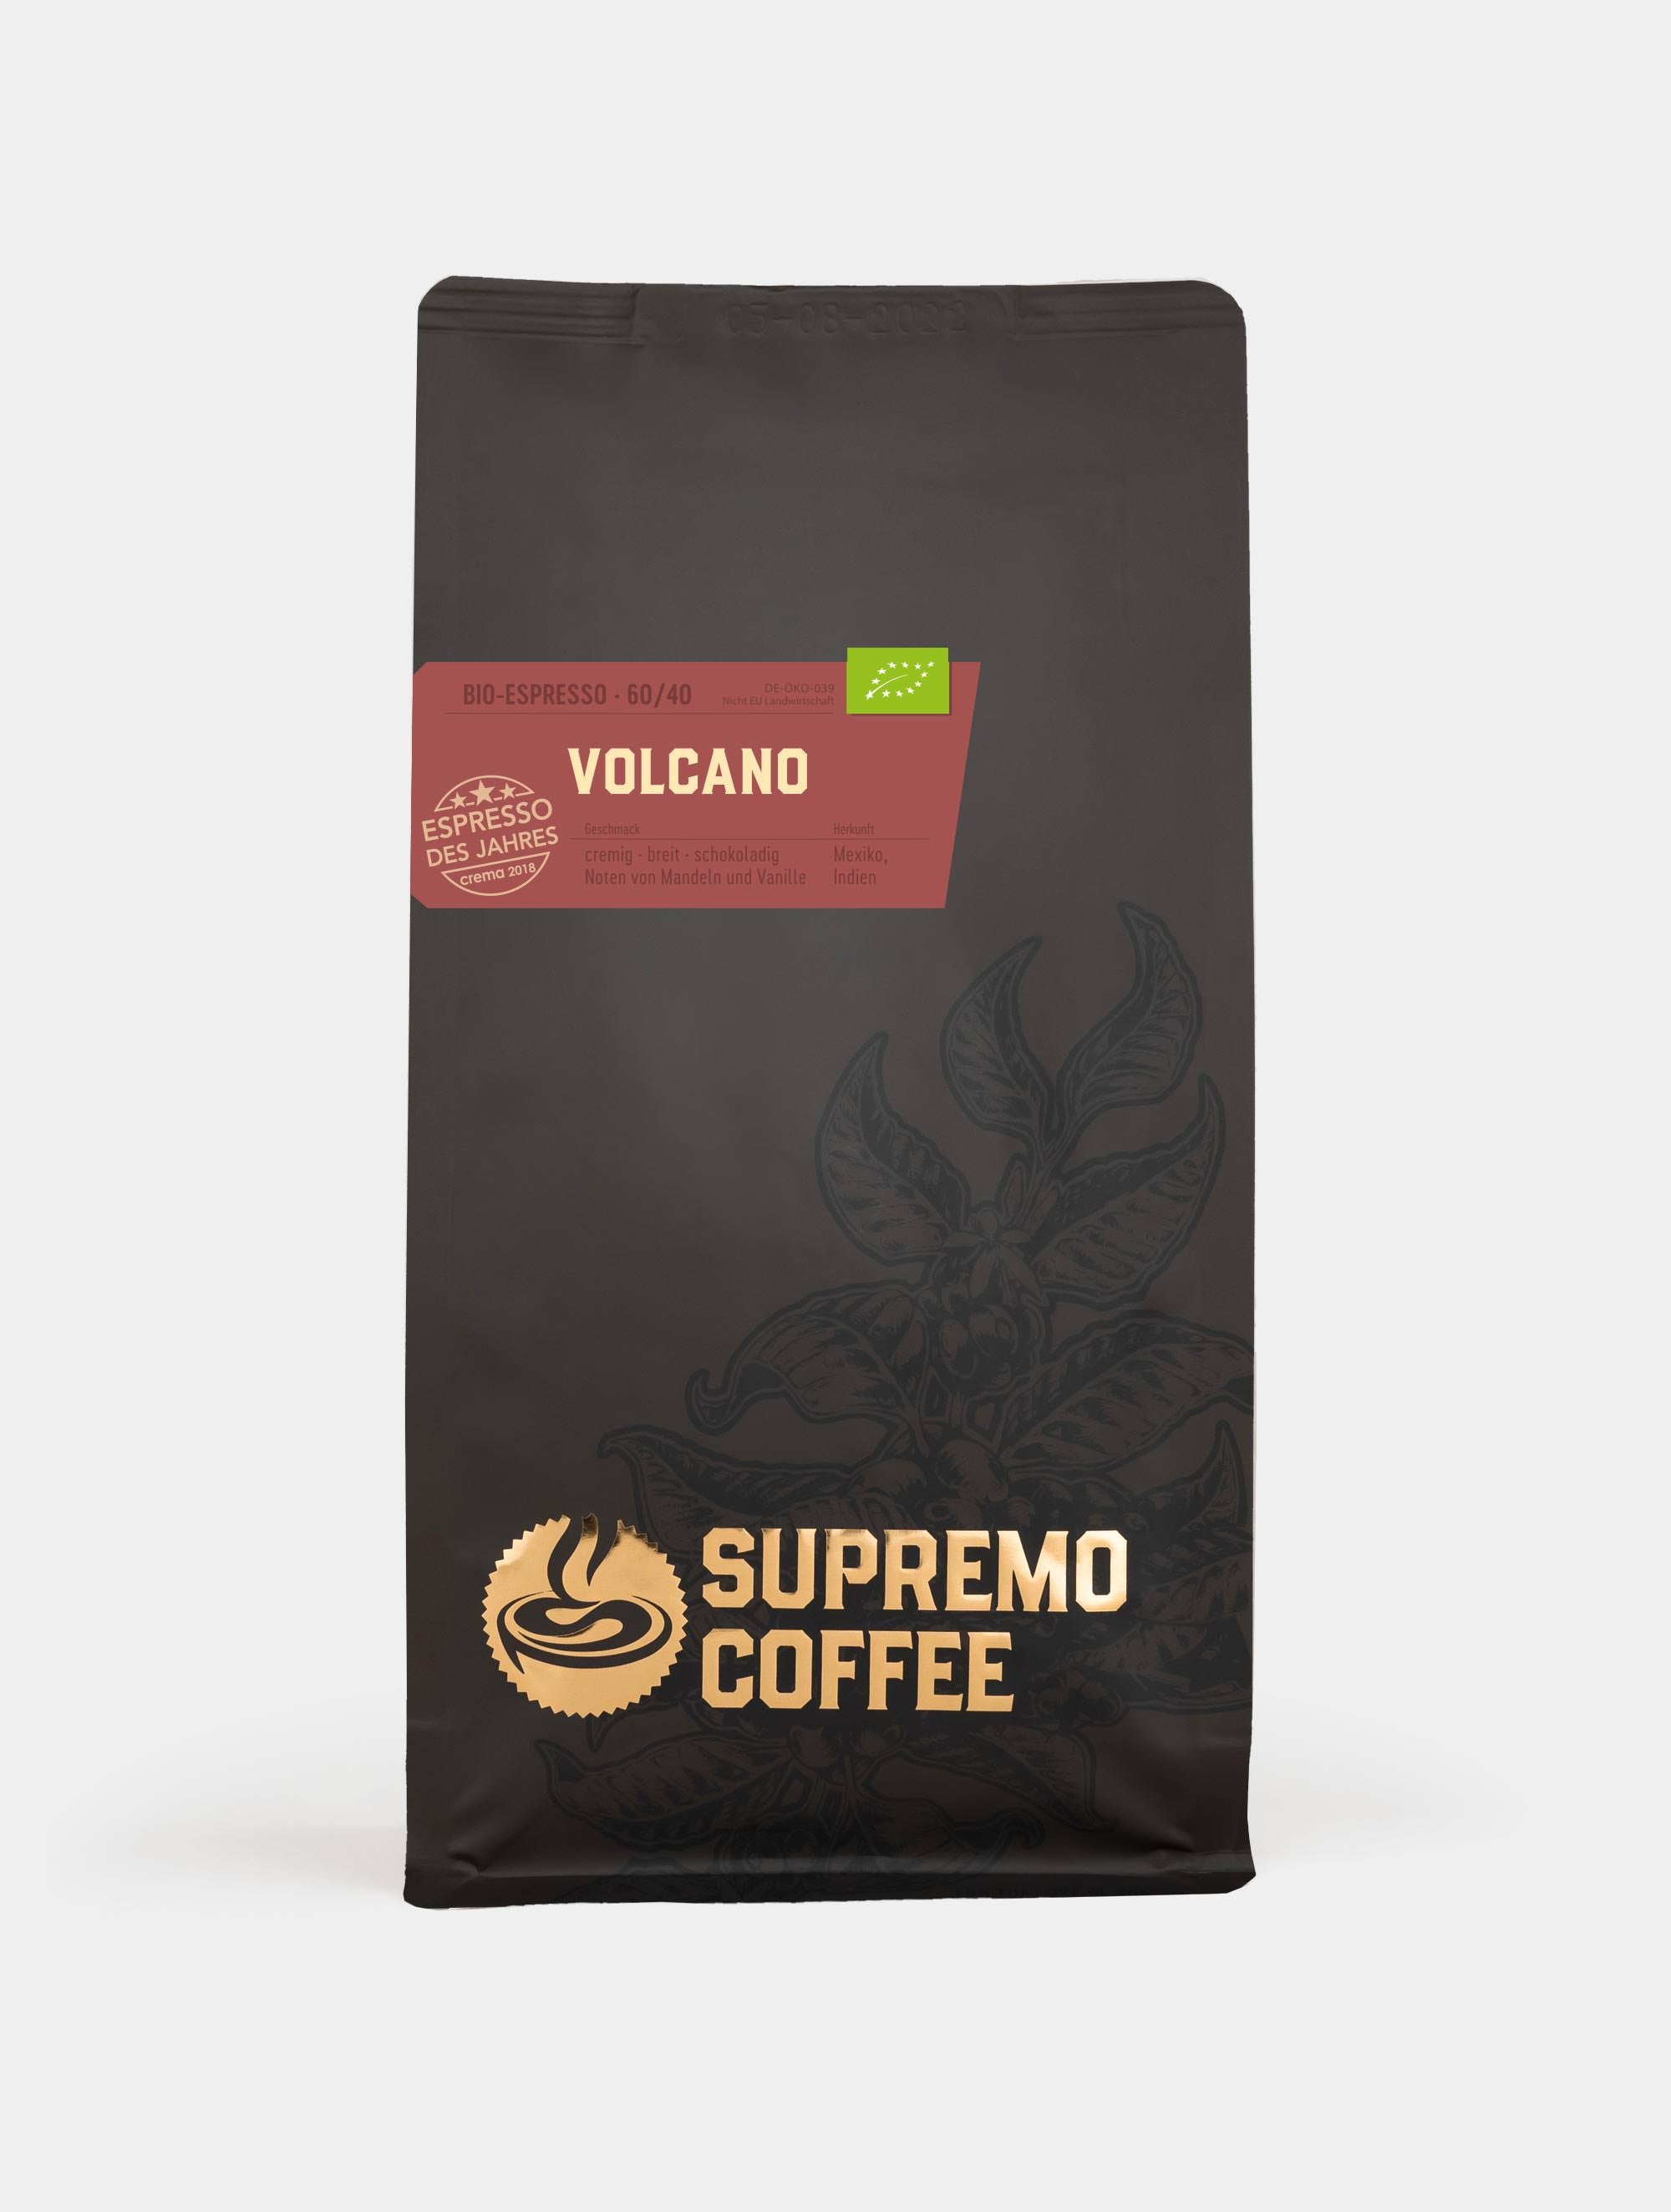 Volcano, Bio-Espresso 60/40 | SUPREMO Coffee